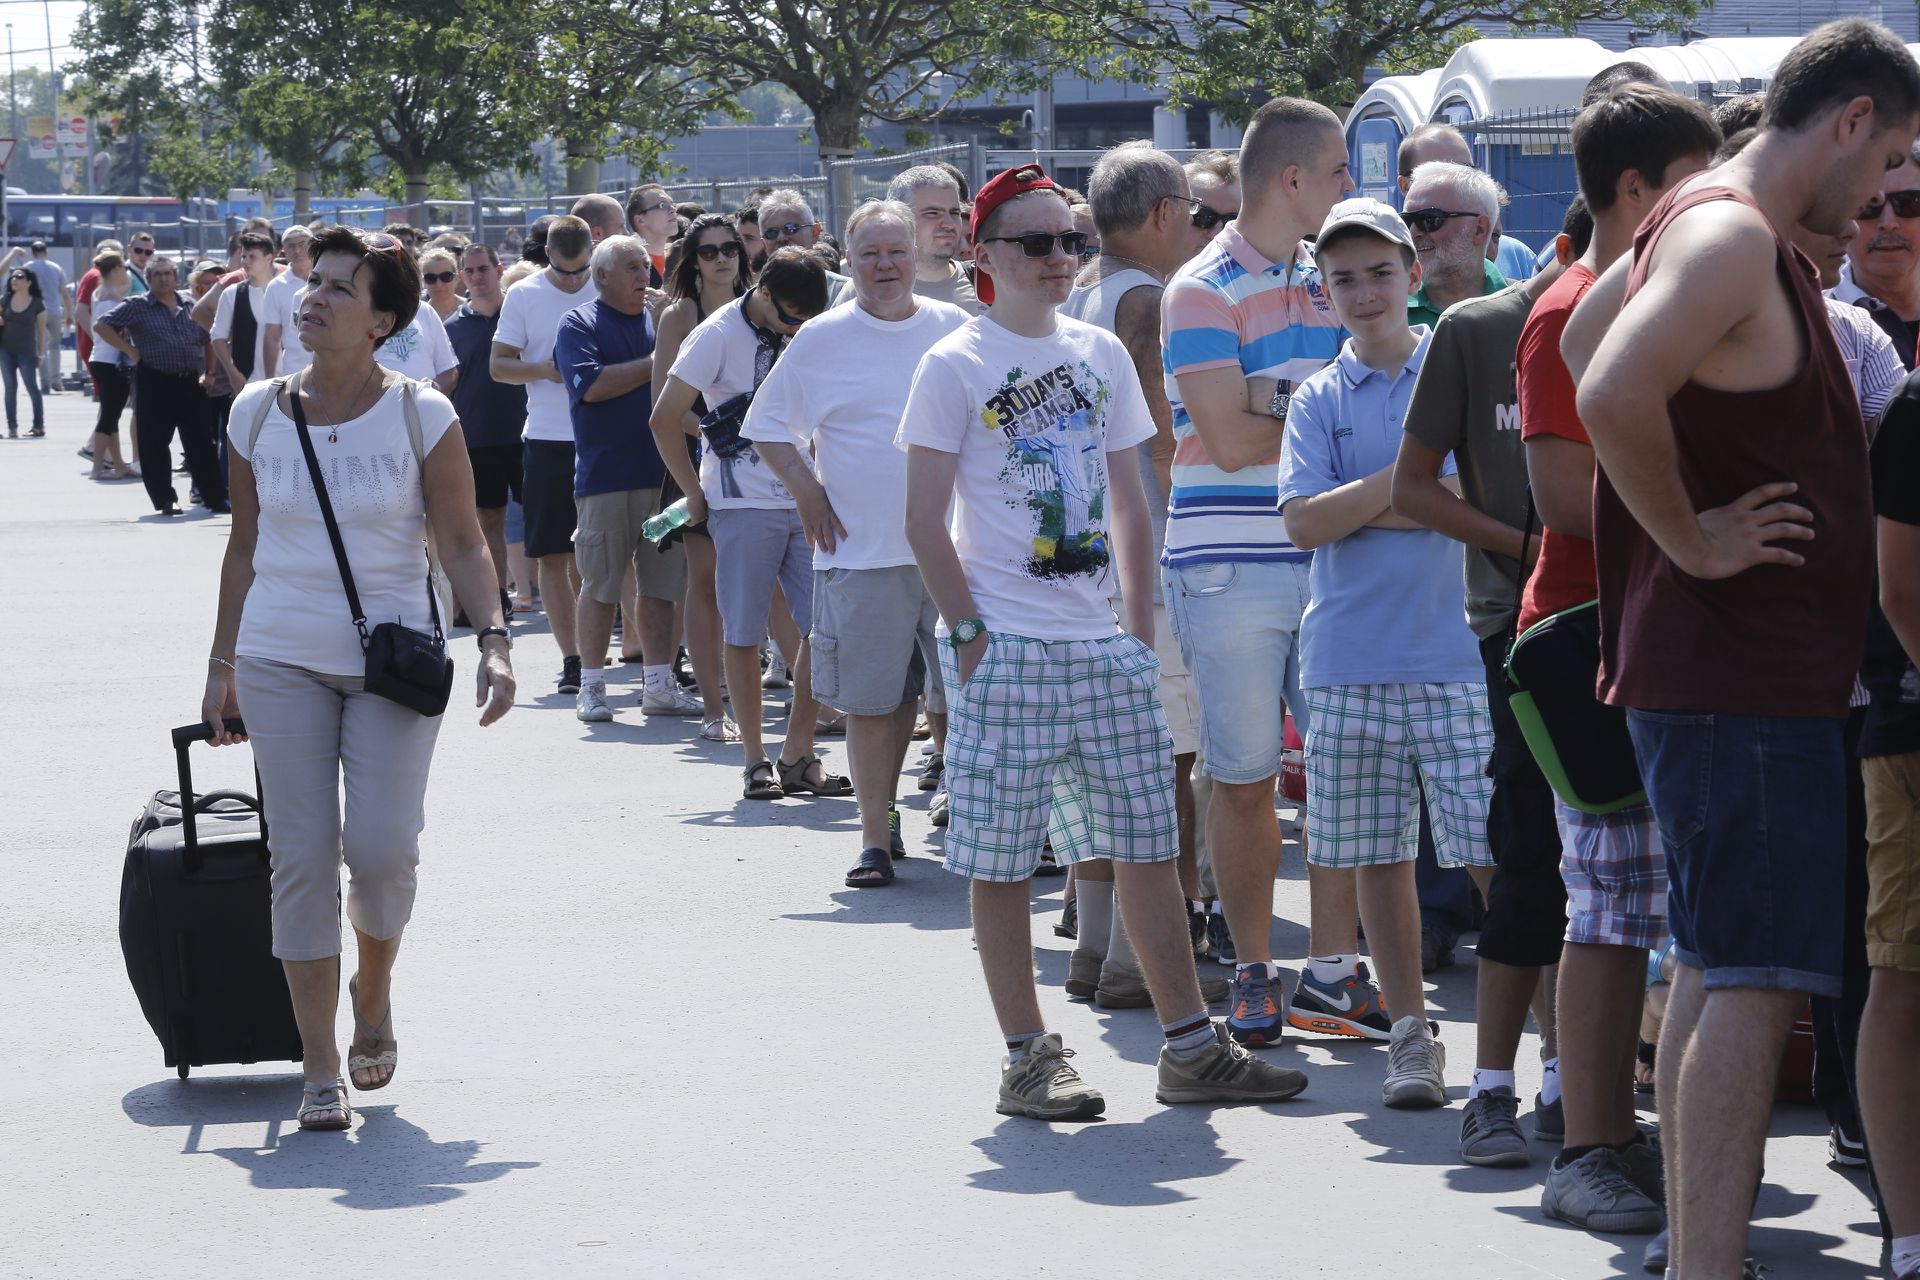 Egy jó meccsre a magyar szurkolók nemcsak pénzt hajlandók áldozni, de órákig sorban állni is képesek a jegyekért (Fotó: Blikk/Fuszek Gábor)